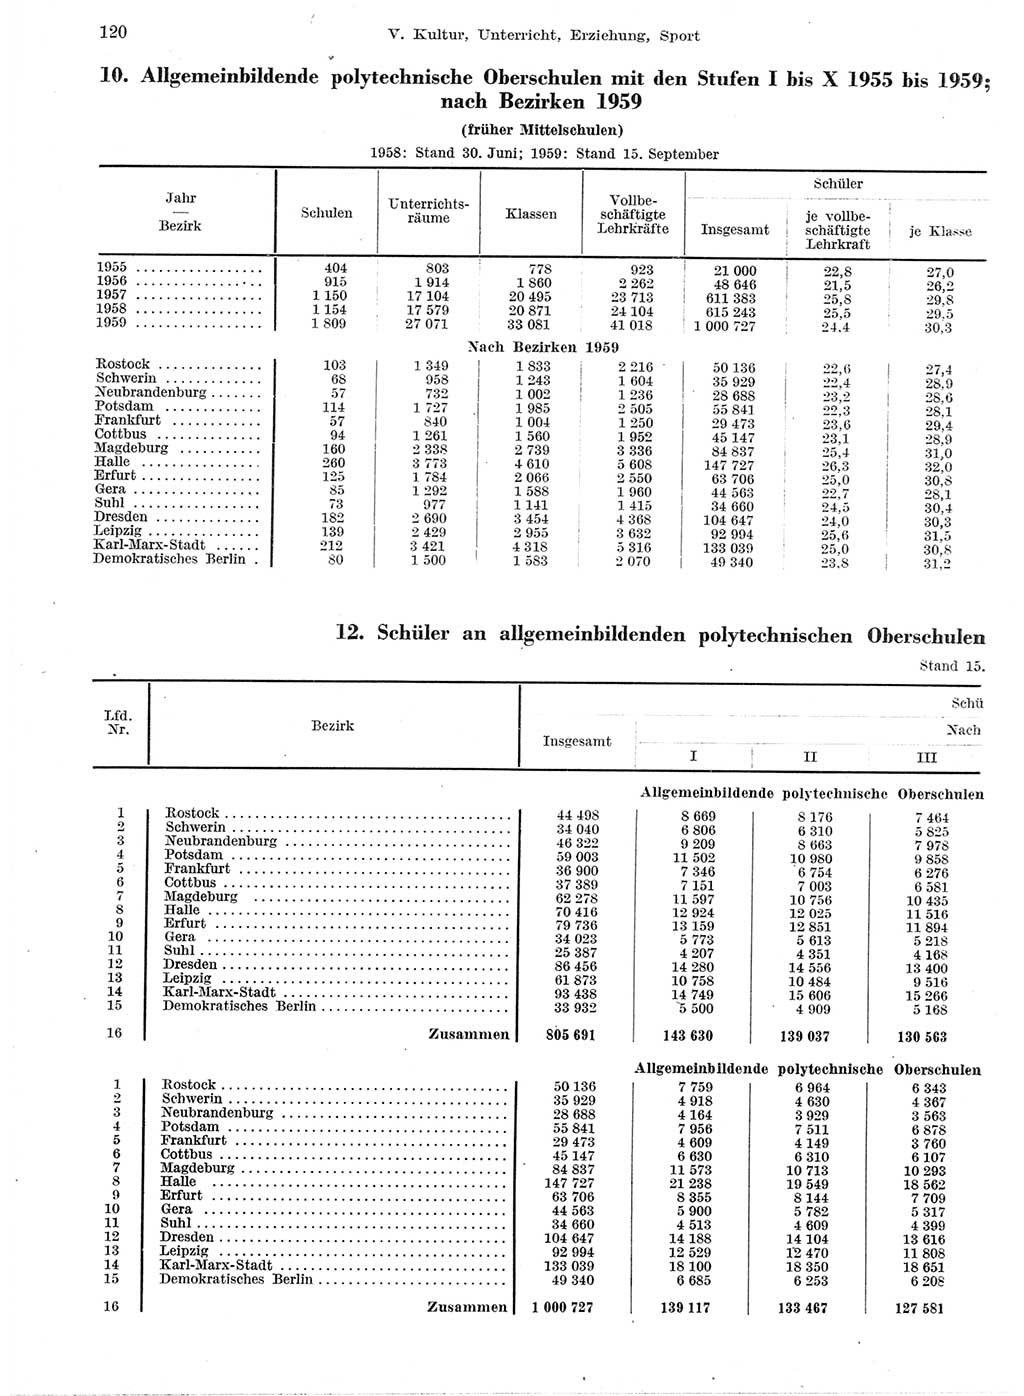 Statistisches Jahrbuch der Deutschen Demokratischen Republik (DDR) 1959, Seite 120 (Stat. Jb. DDR 1959, S. 120)